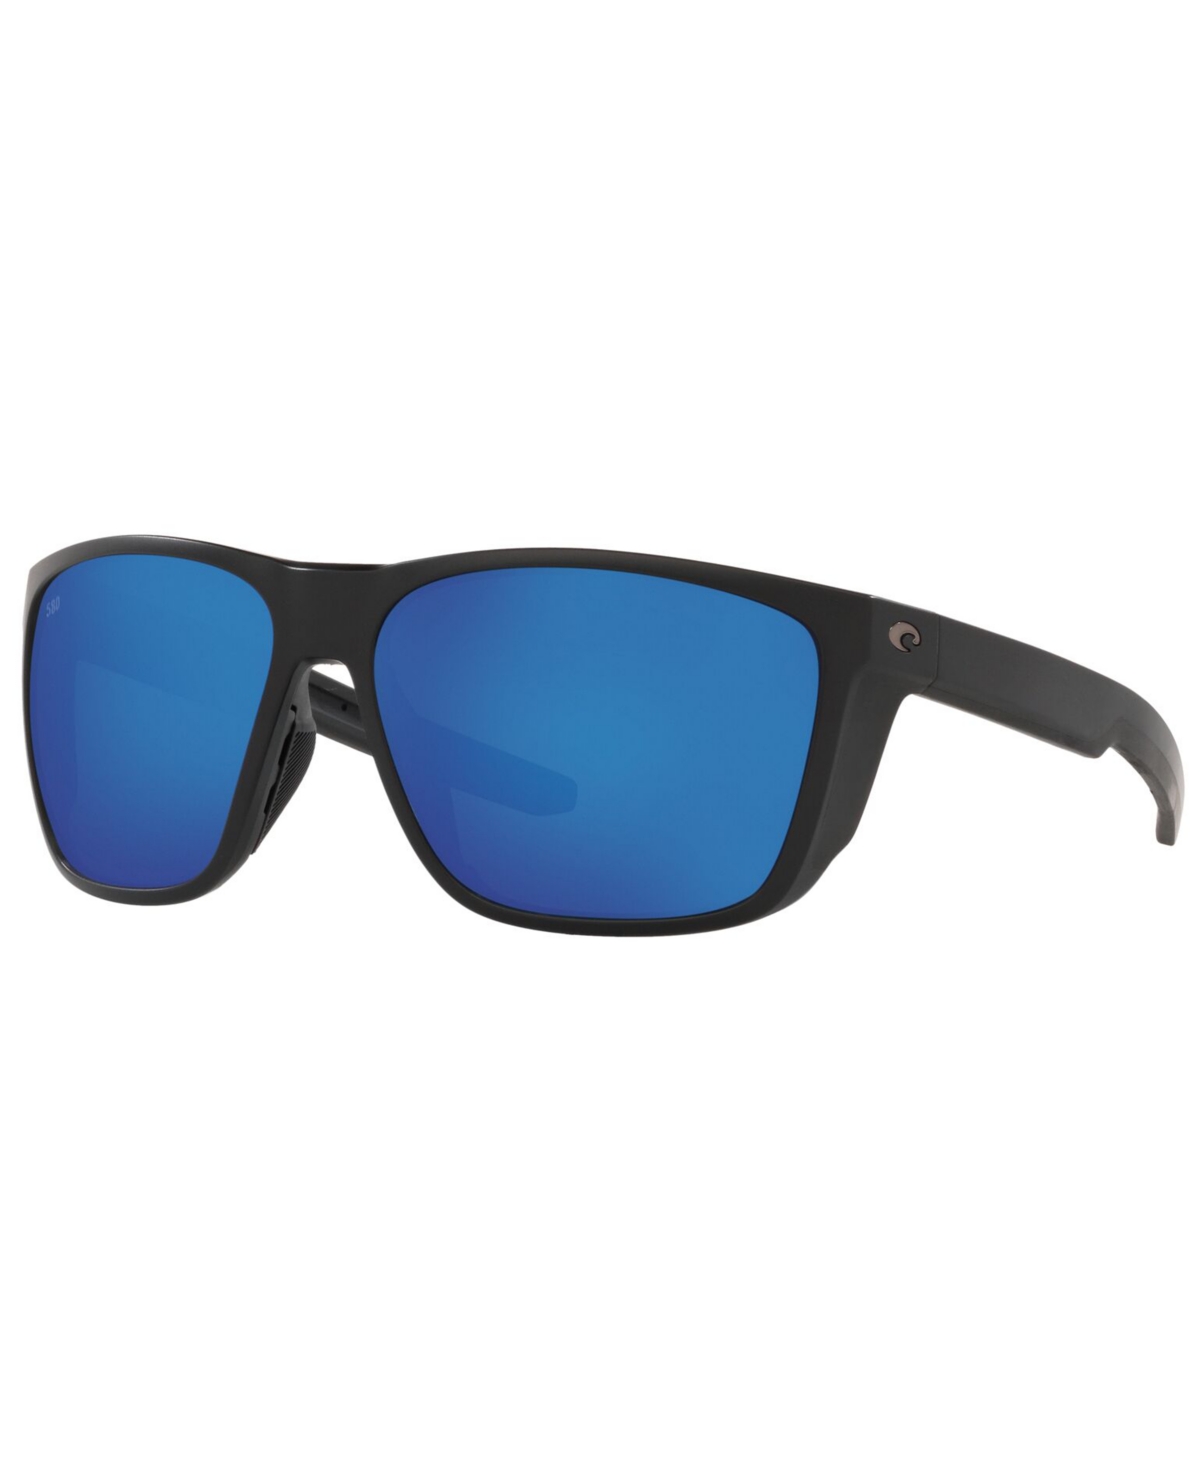 Costa Del Mar Ferg Xl Polarized Sunglasses, 6S9012 62